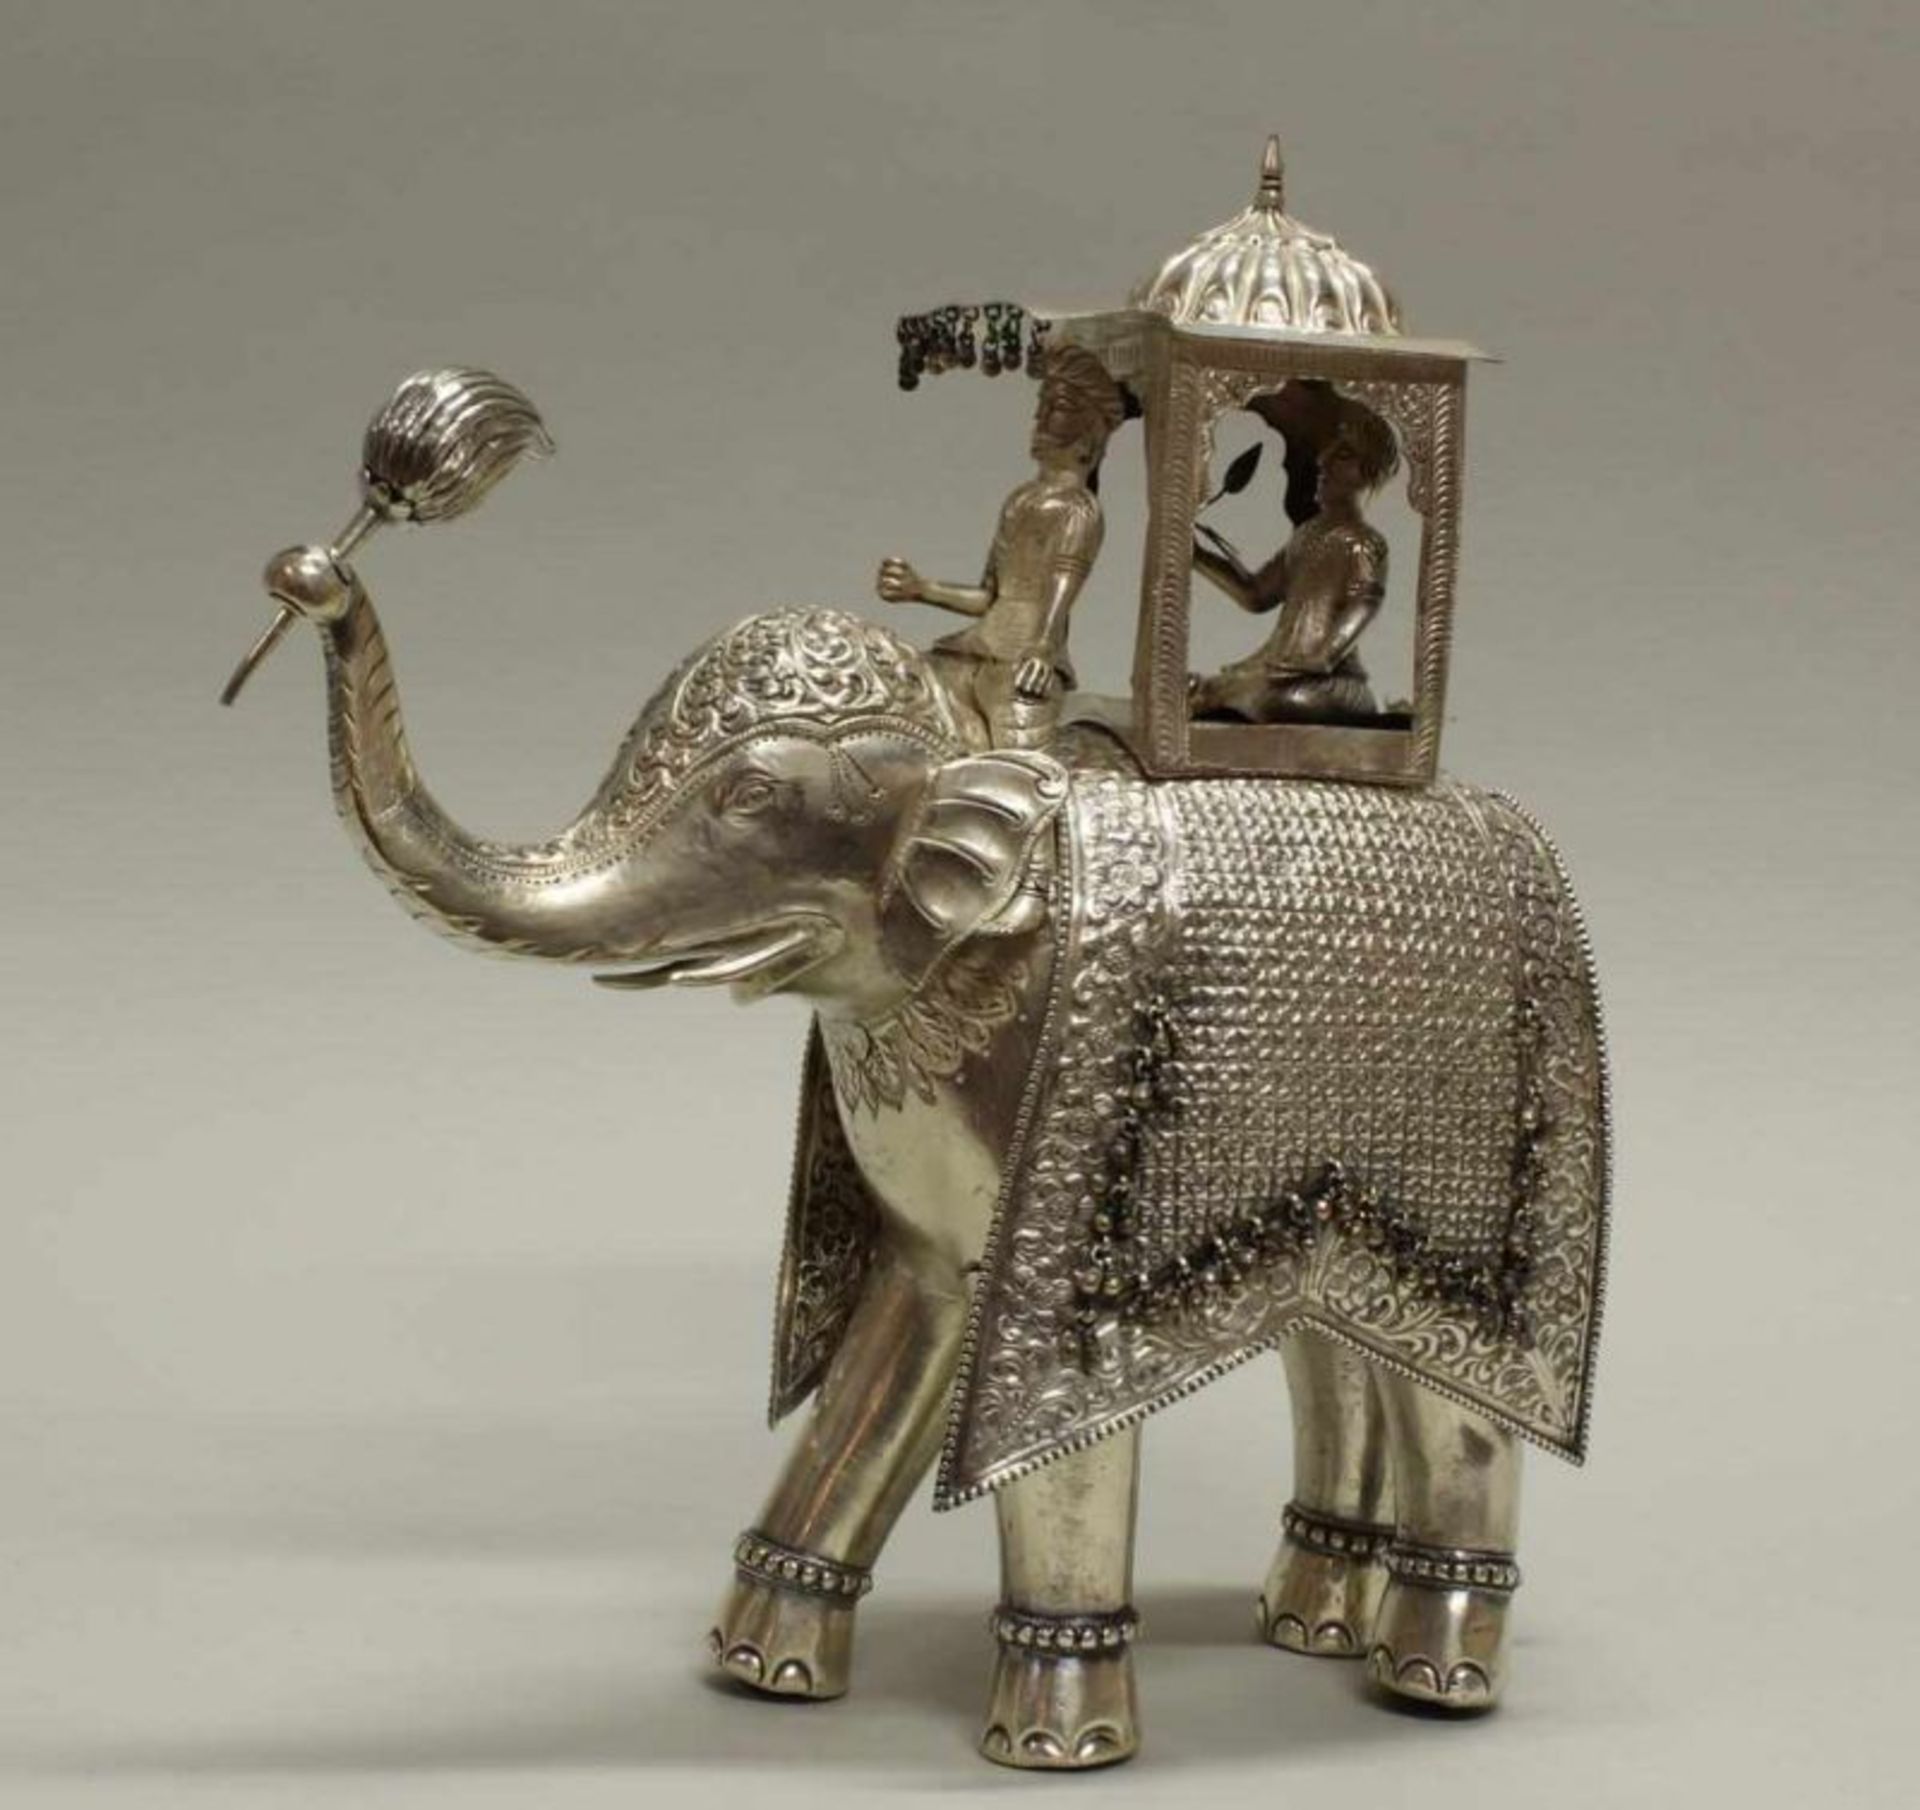 Figur, "Fürst auf Elefant", Silber 925, Südostasien, 20. Jh., 33 cm hoch, ca. 1.980 g, Beine mit